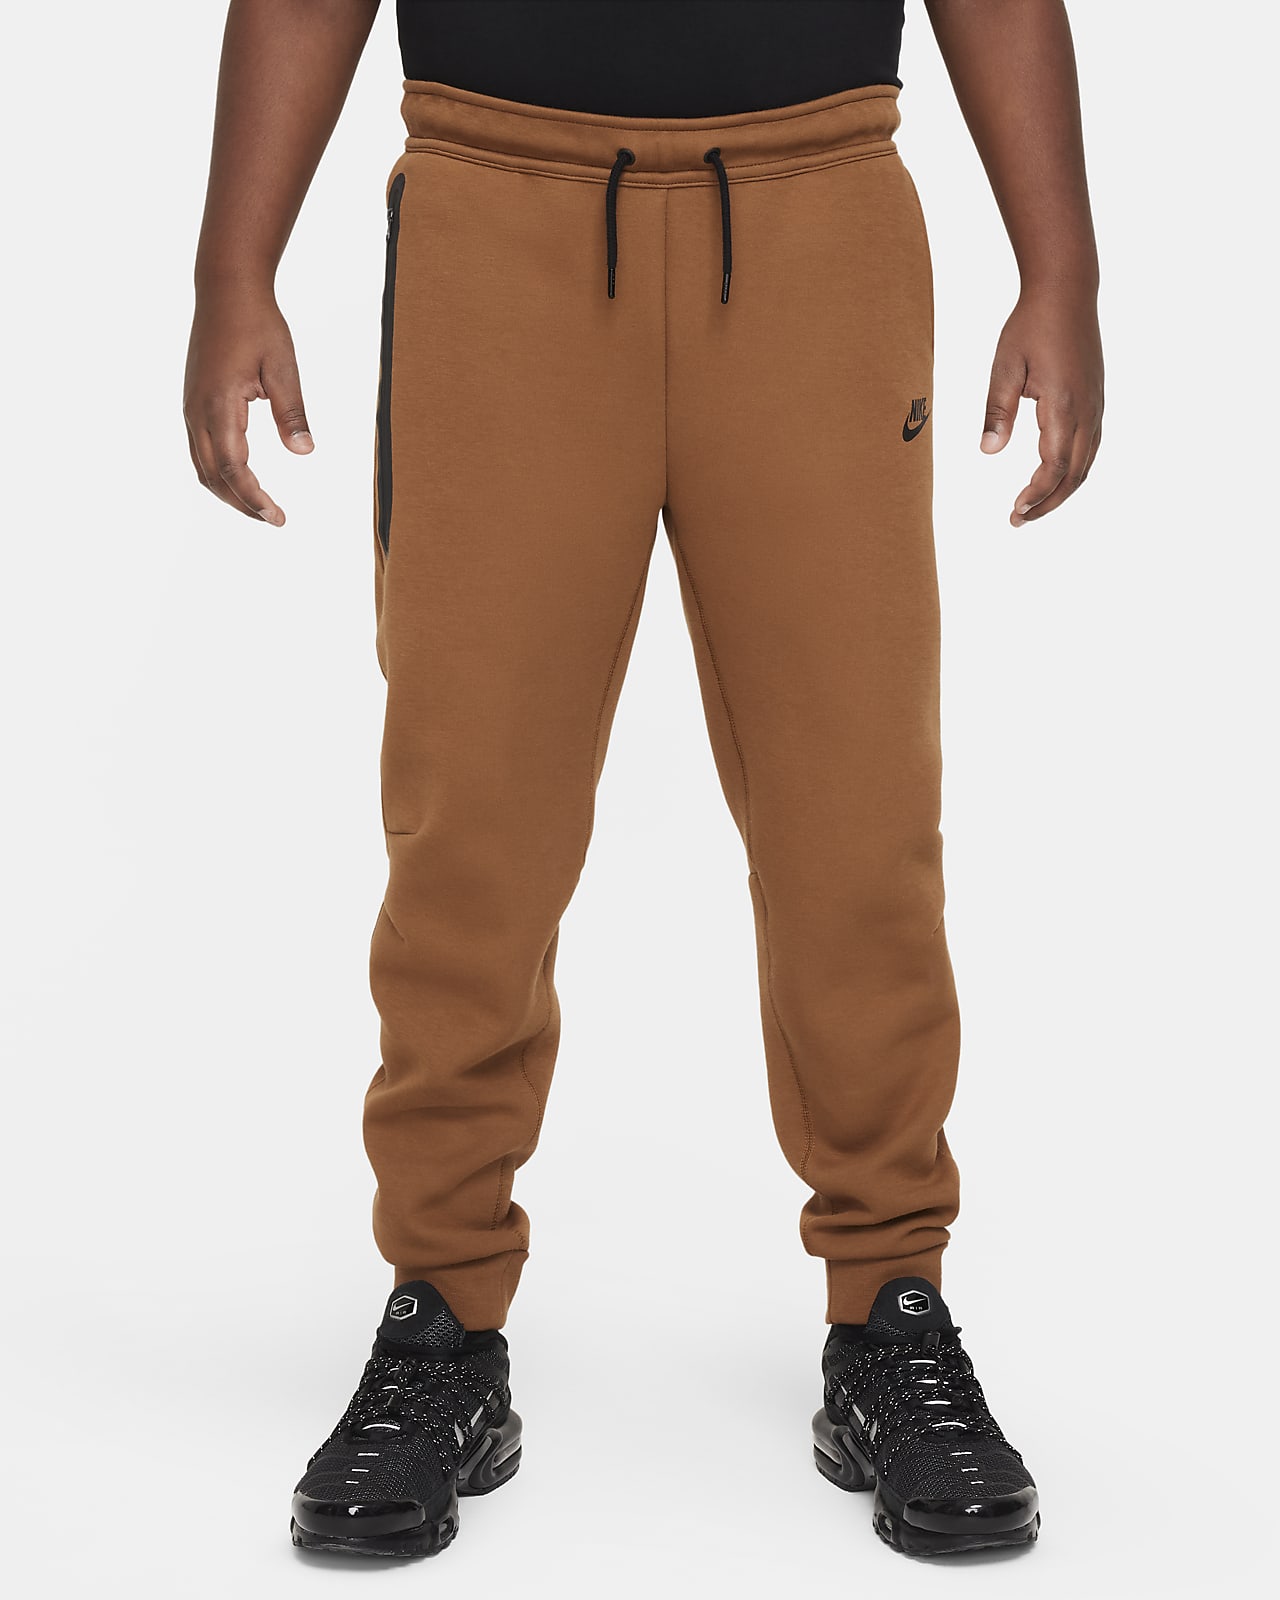 Nike Sportswear Tech Fleece Big Kids' (Boys') Pants (Extended Size)